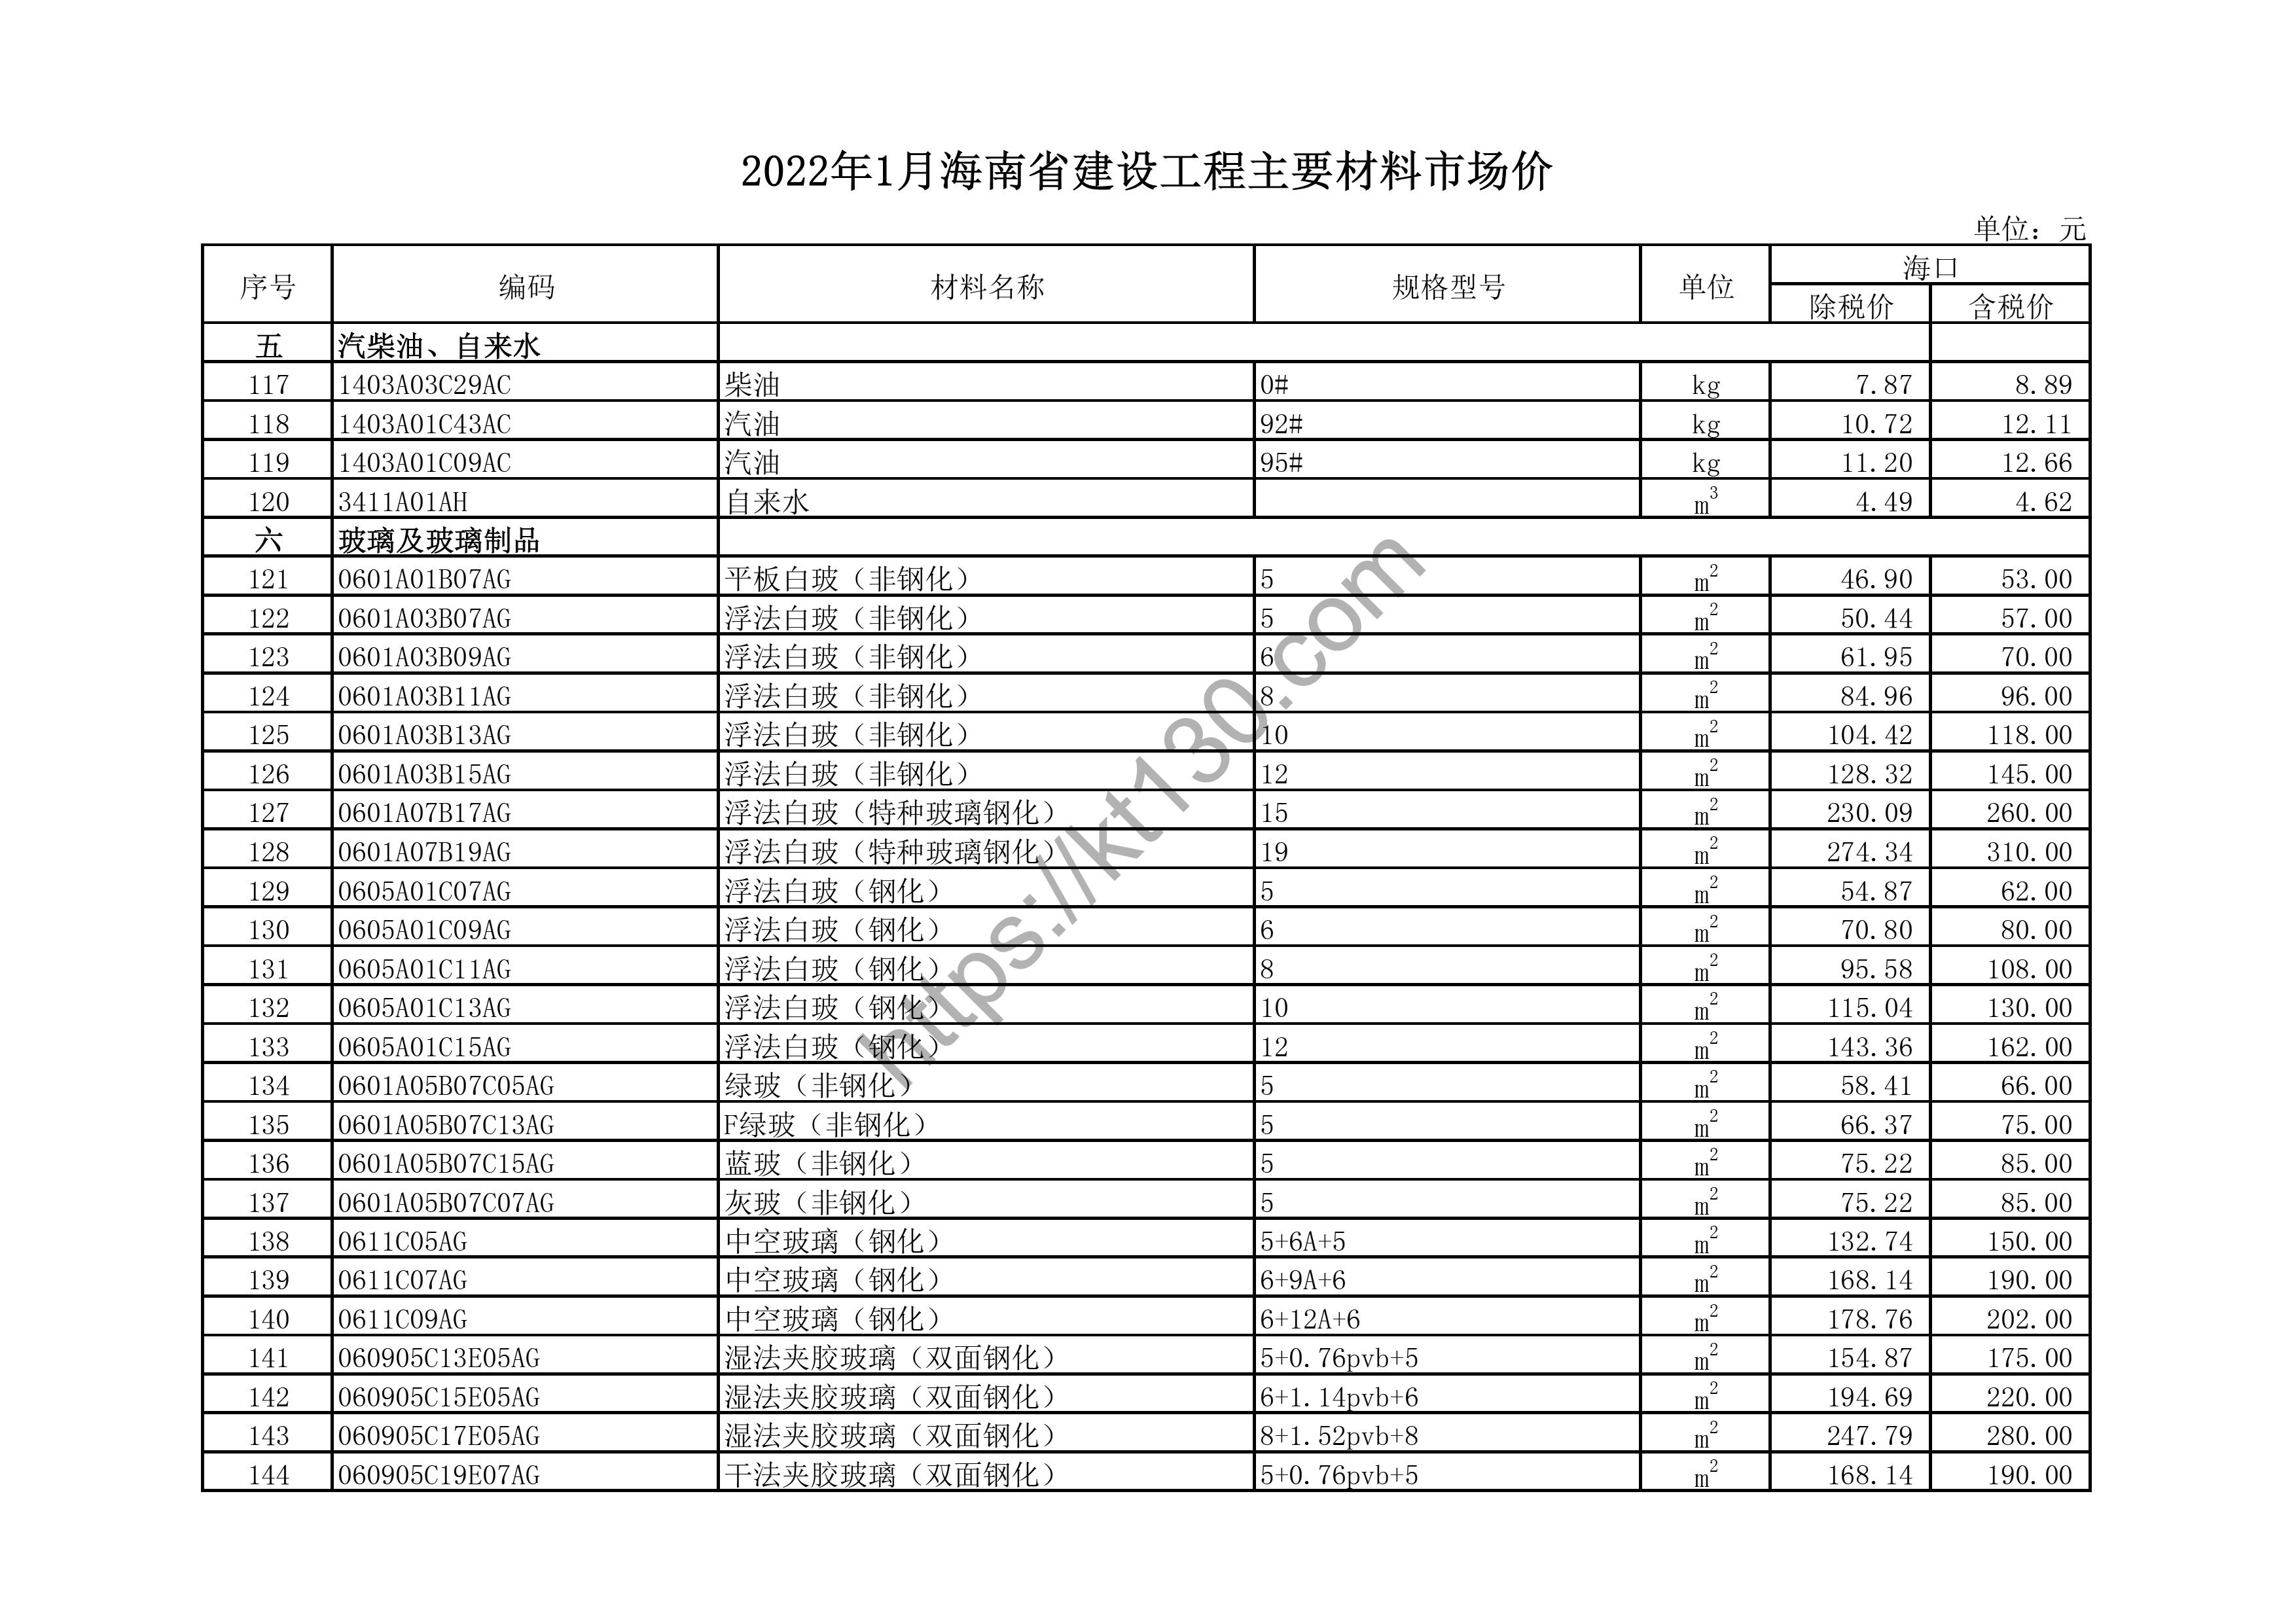 海南省2022年1月建筑材料价_玻璃及玻璃制品_43624